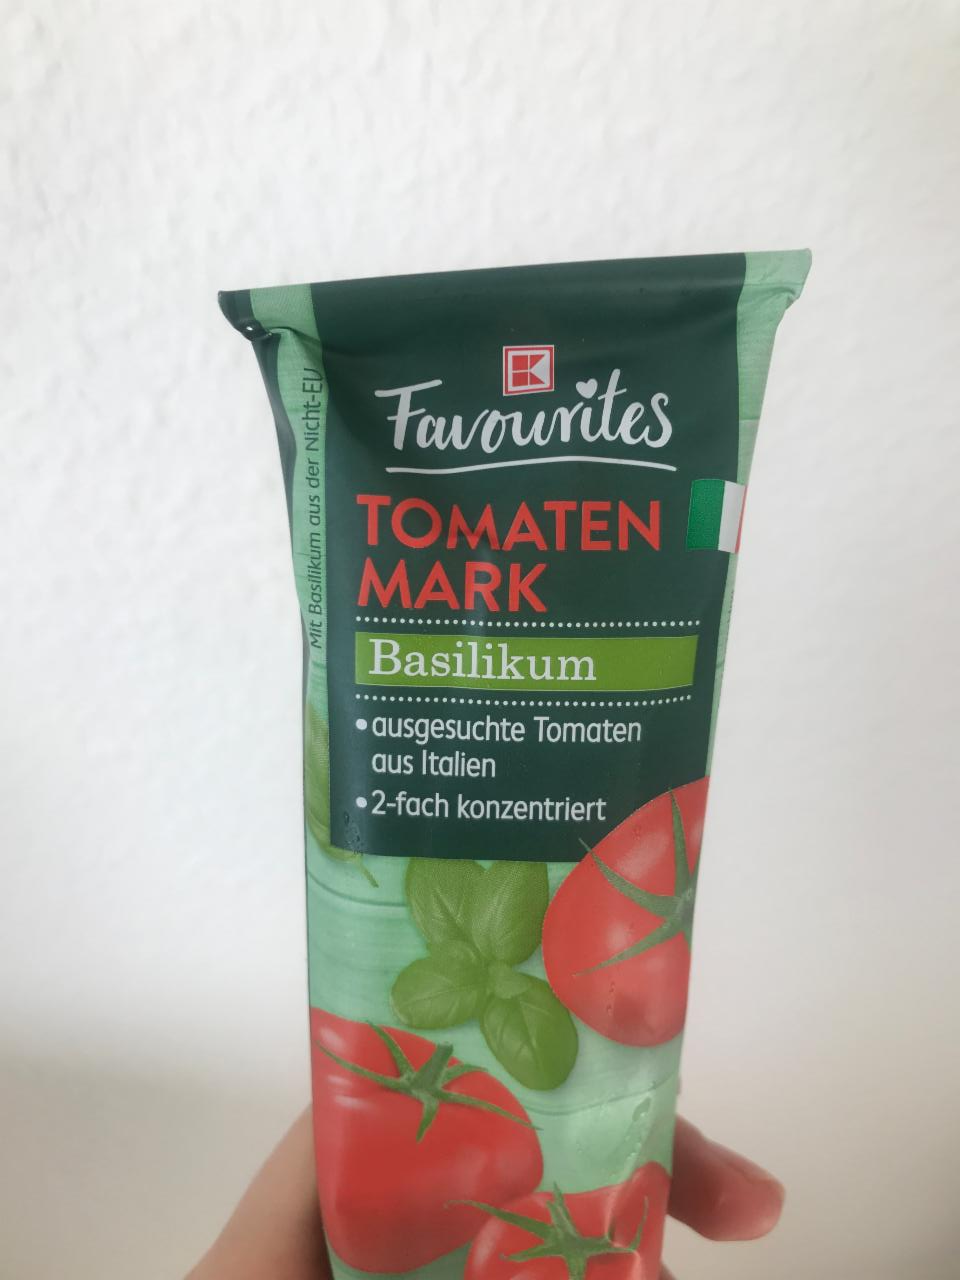 Фото - Томатная паста Tomaten Mark Basilikum K-Classic